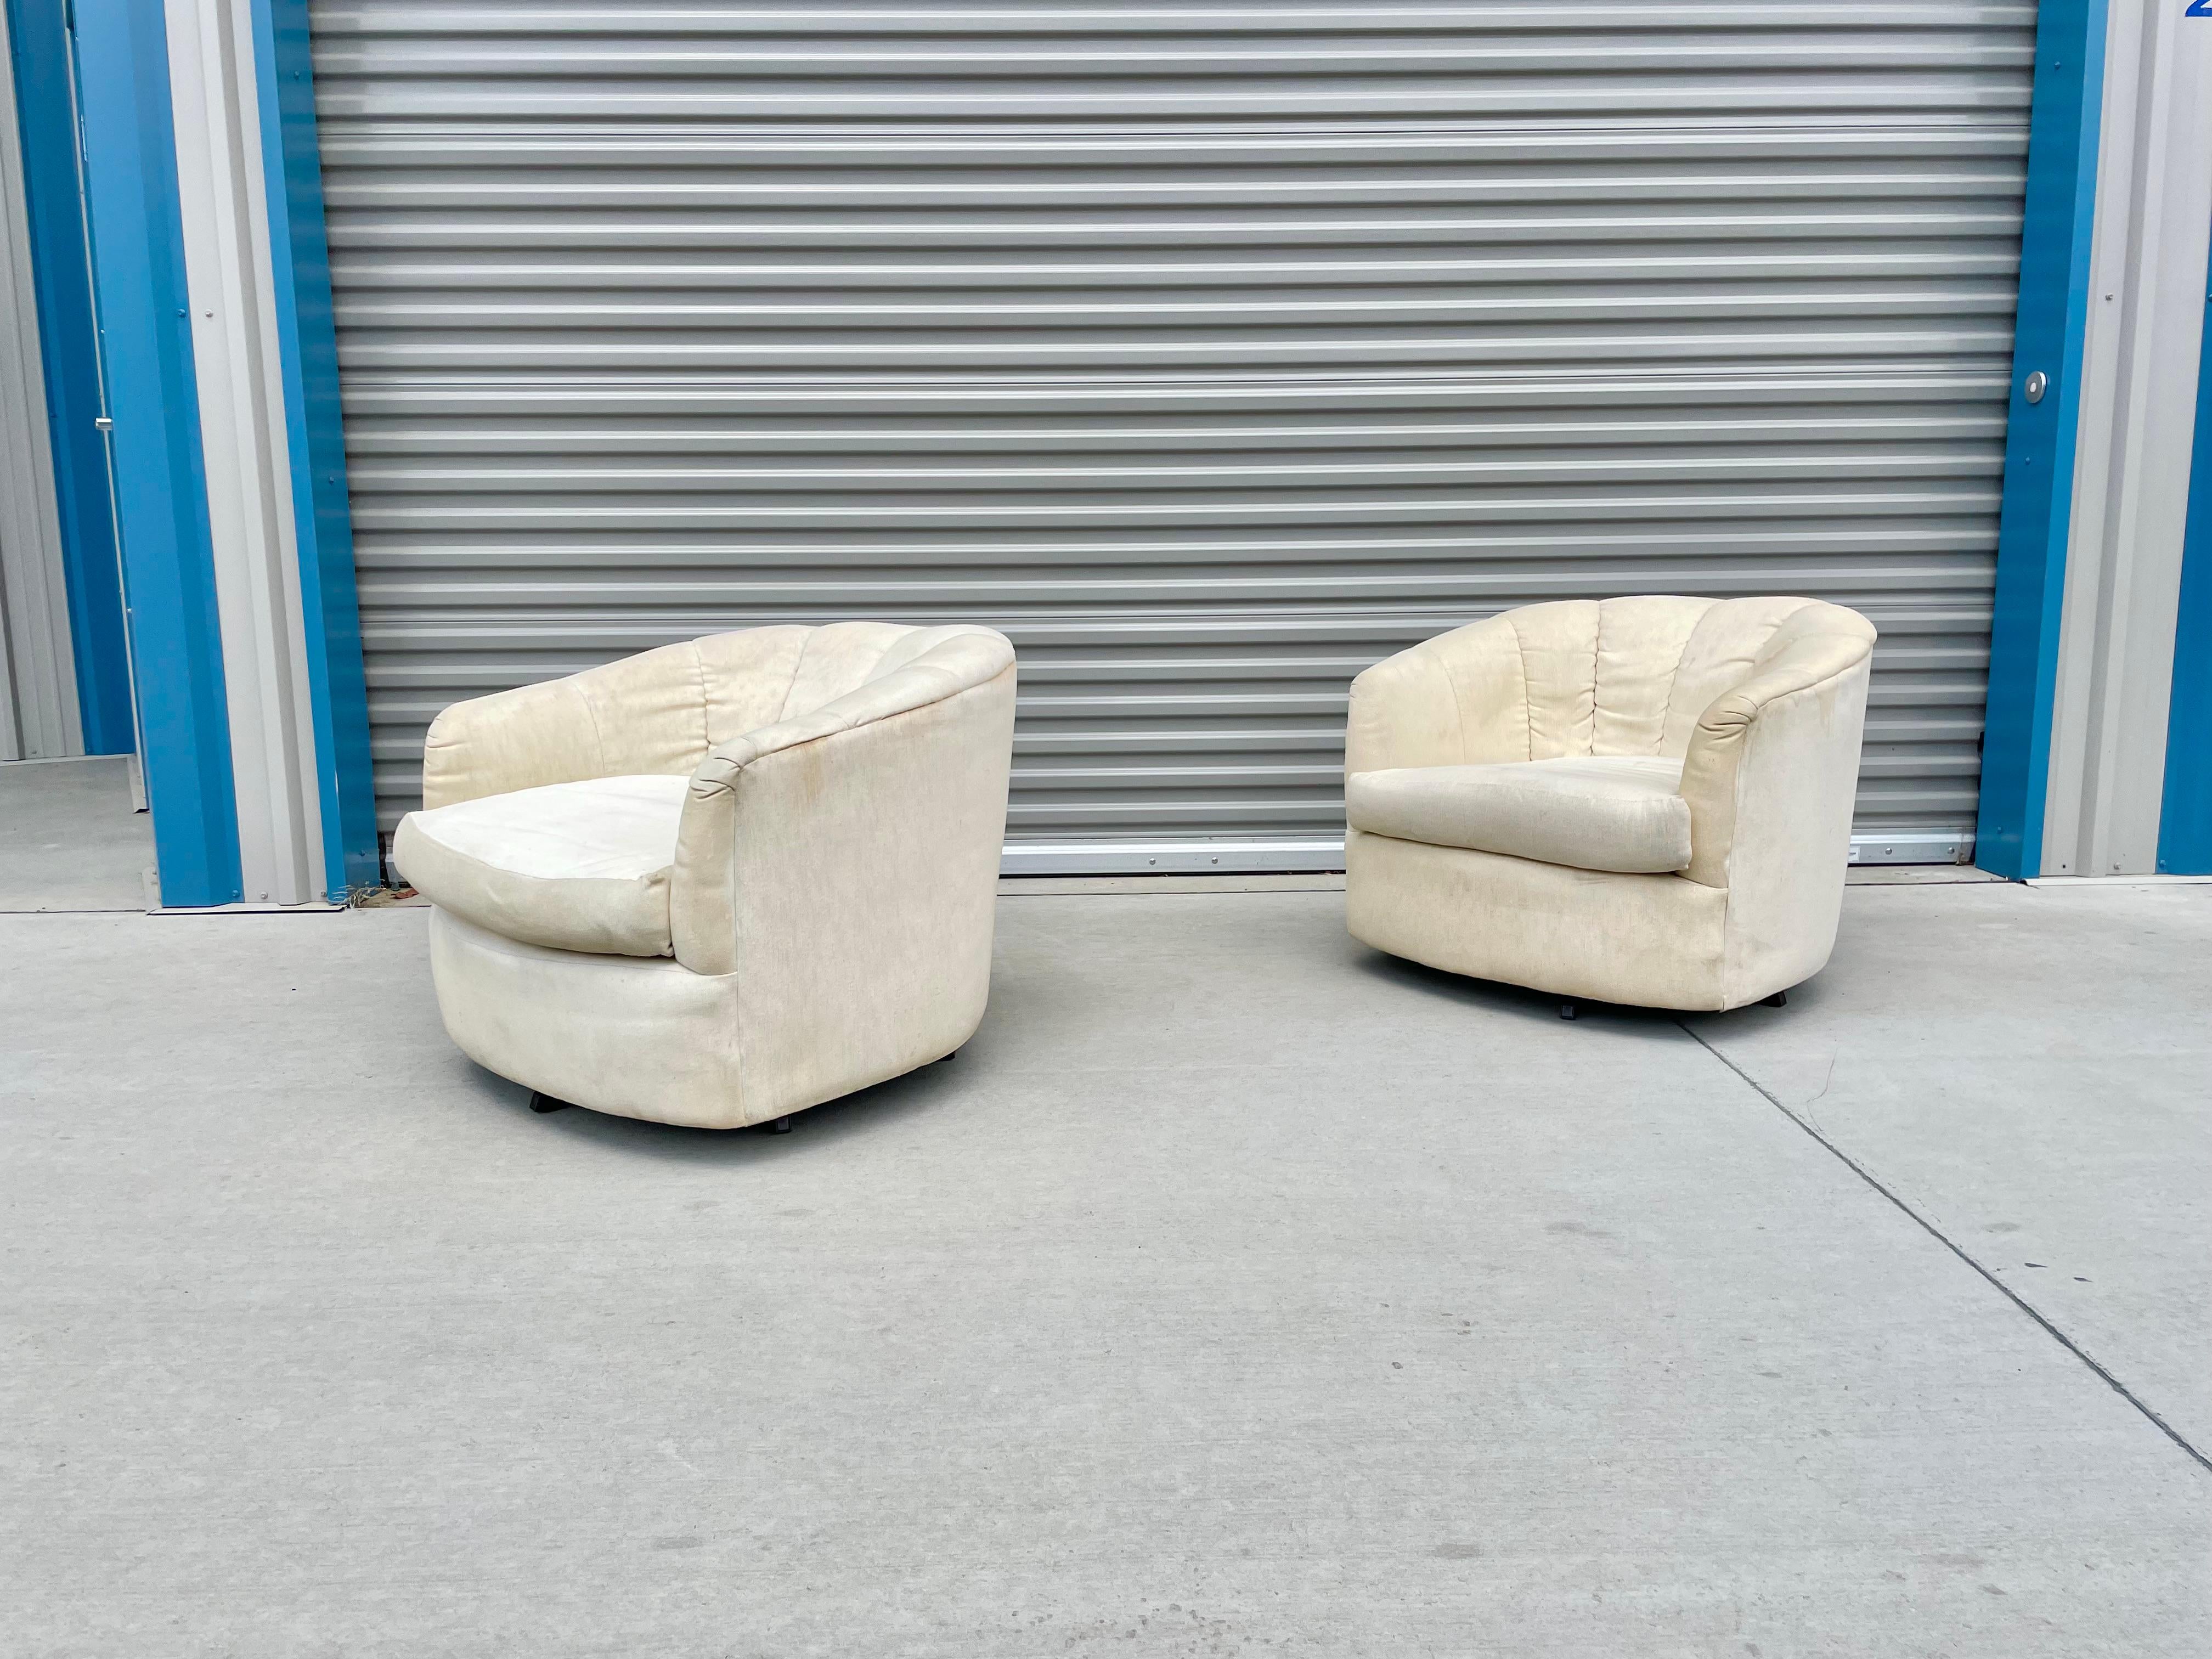 Fantastique paire de chaises barriques vintage, inspirées de Milo Baughman, conçues et fabriquées aux États-Unis, vers les années 1970. Ces magnifiques chaises sont dotées d'une base pivotante qui tourne à 360 degrés. Les chaises sont recouvertes